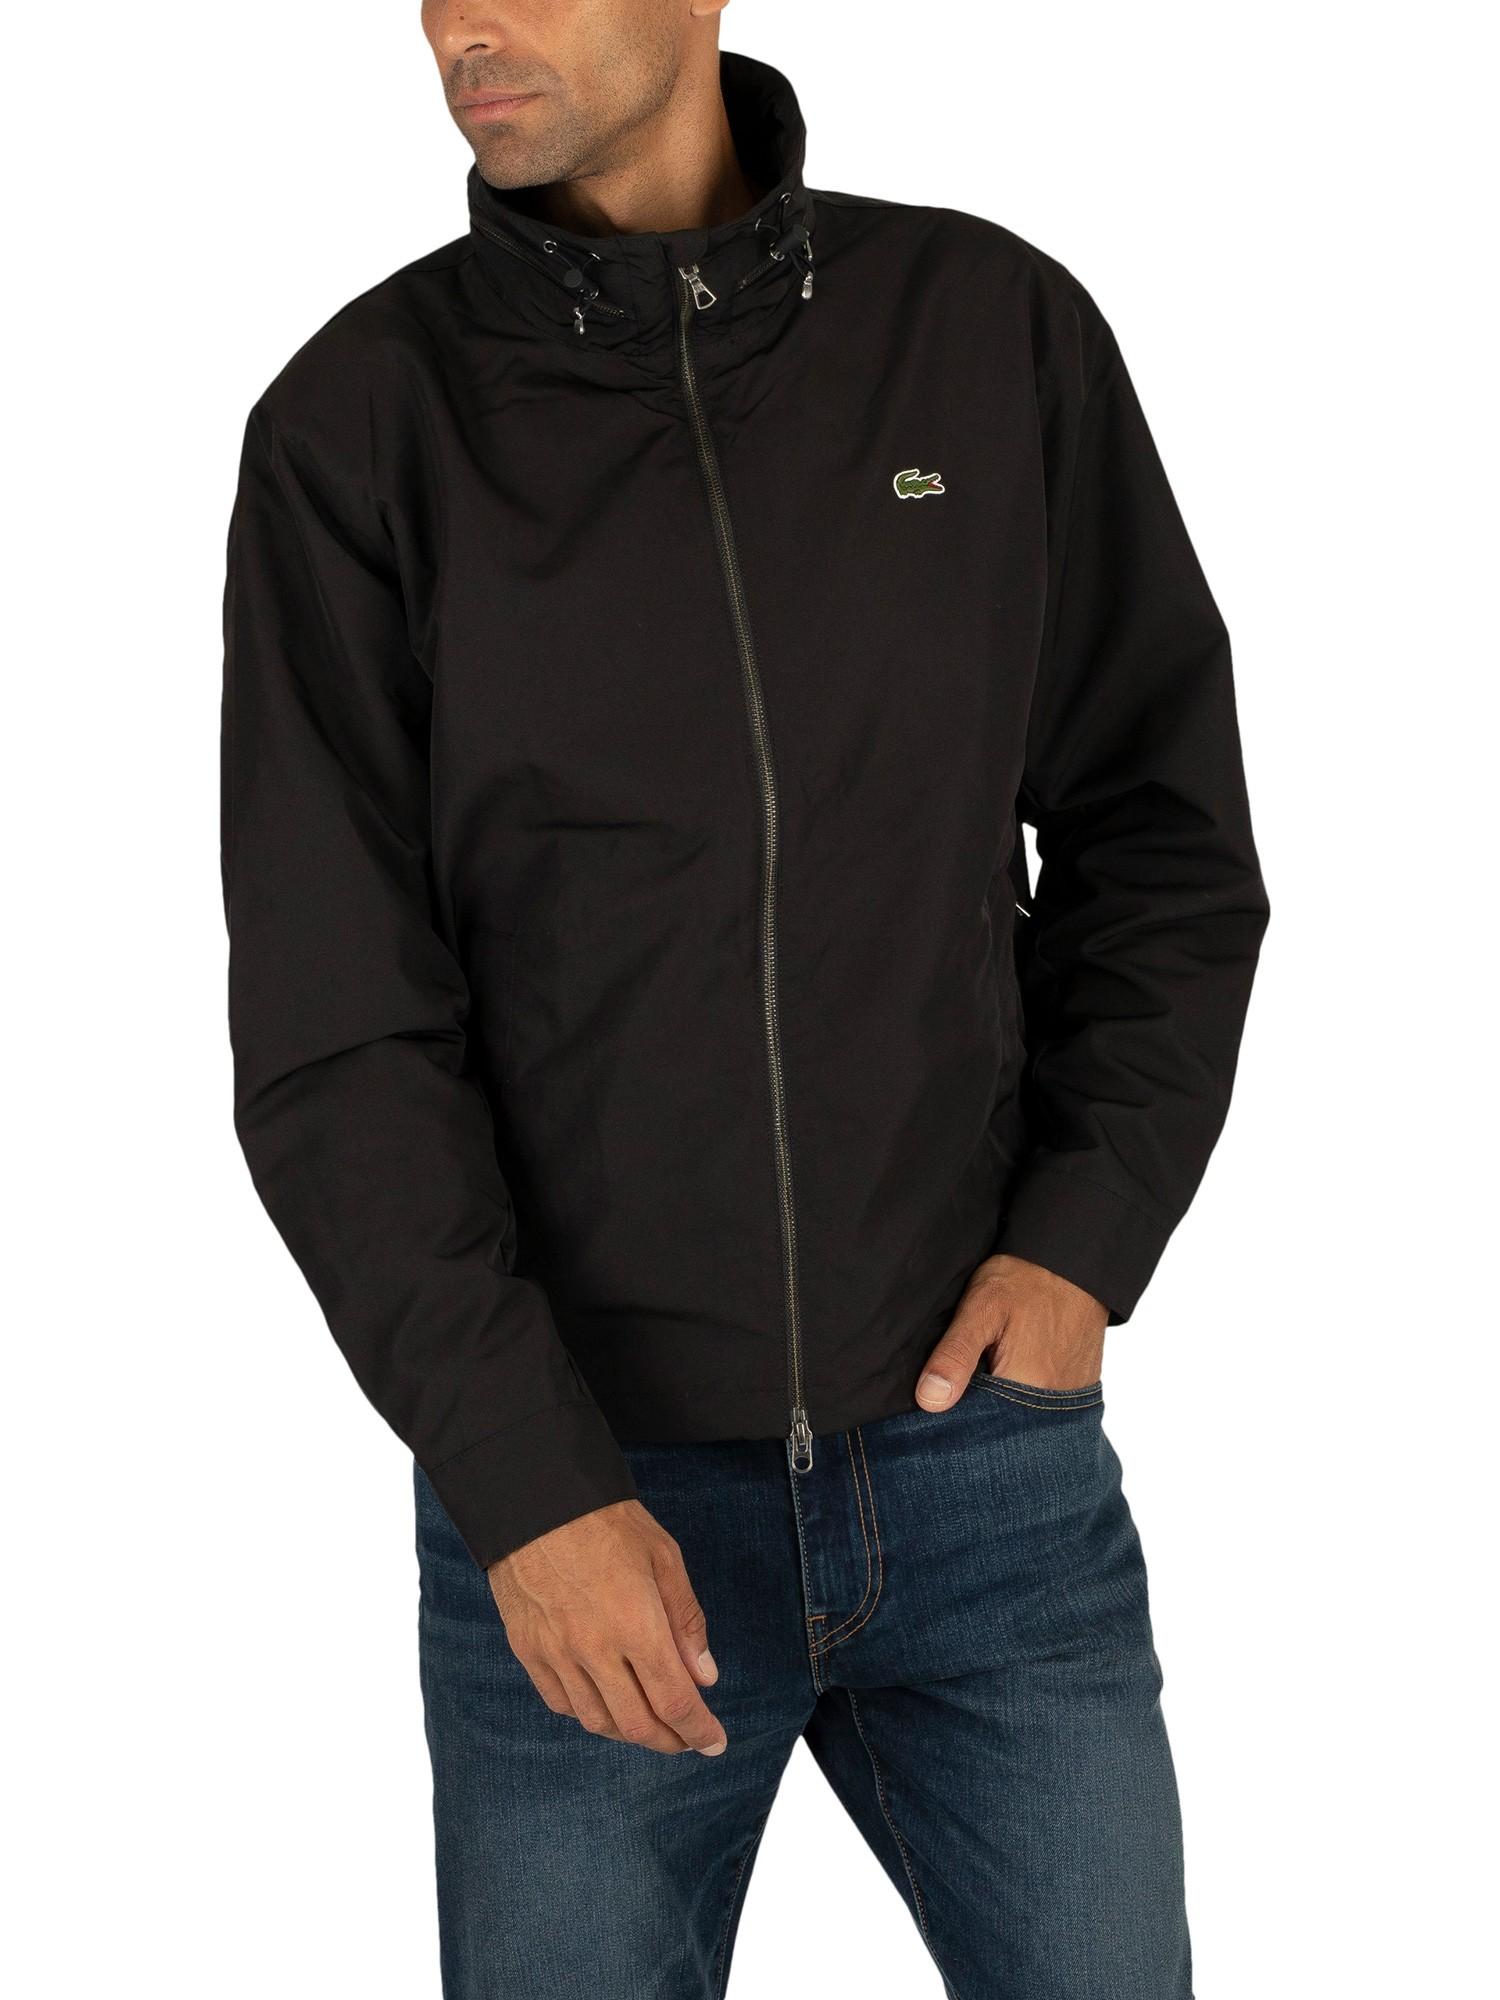 Lacoste Synthetic Windbreaker Jacket in Black for Men - Lyst